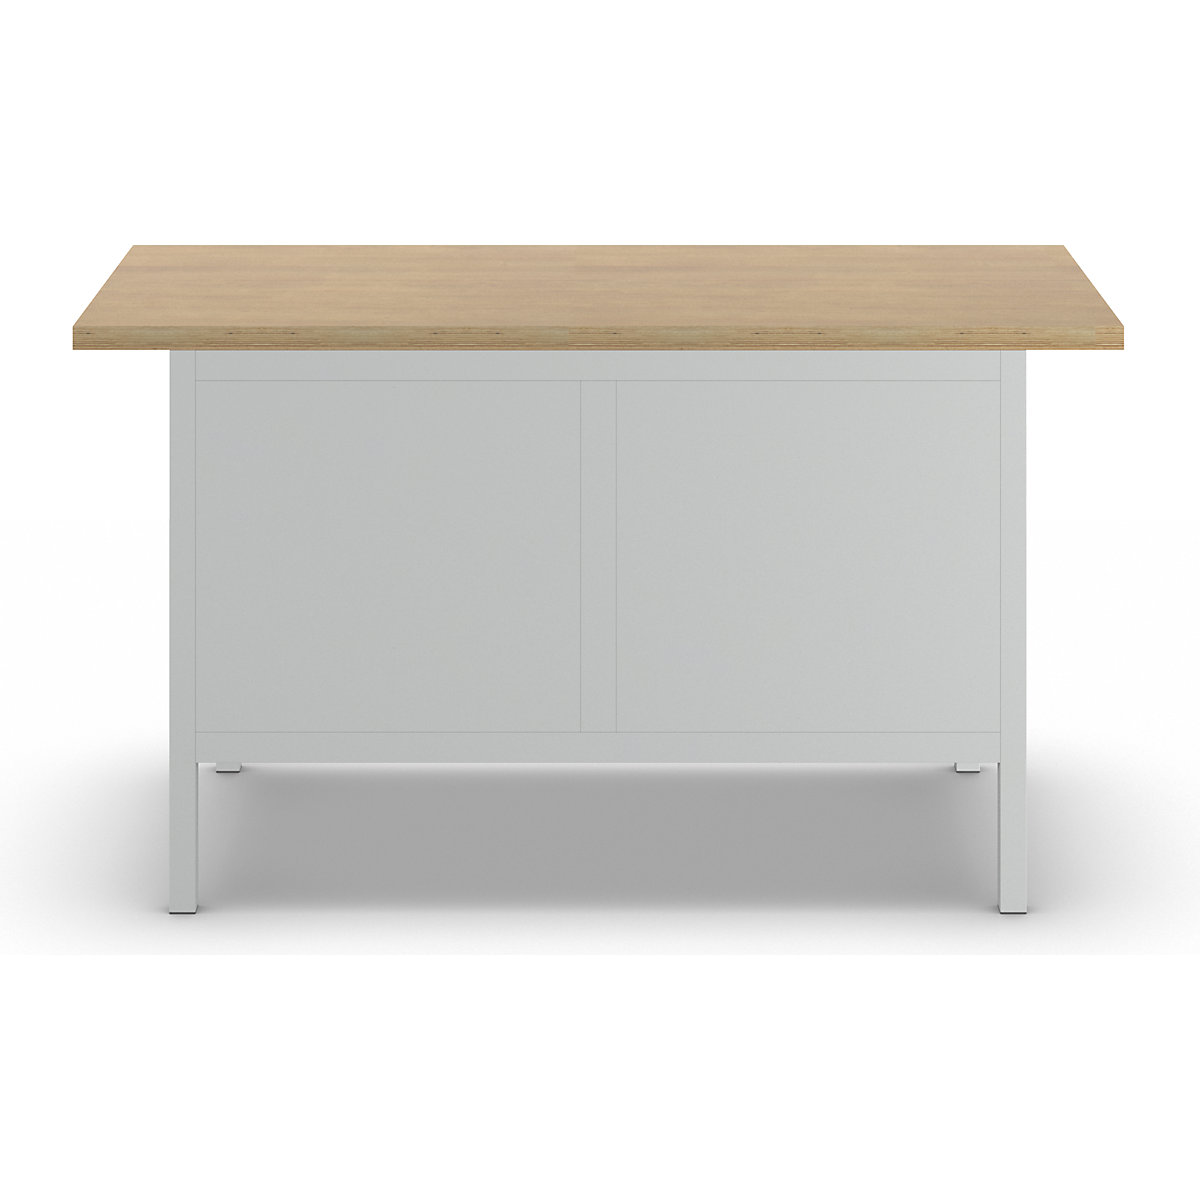 Stół warsztatowy z blatem z litego buku, konstrukcja ramowa – LISTA (Zdjęcie produktu 5)-4